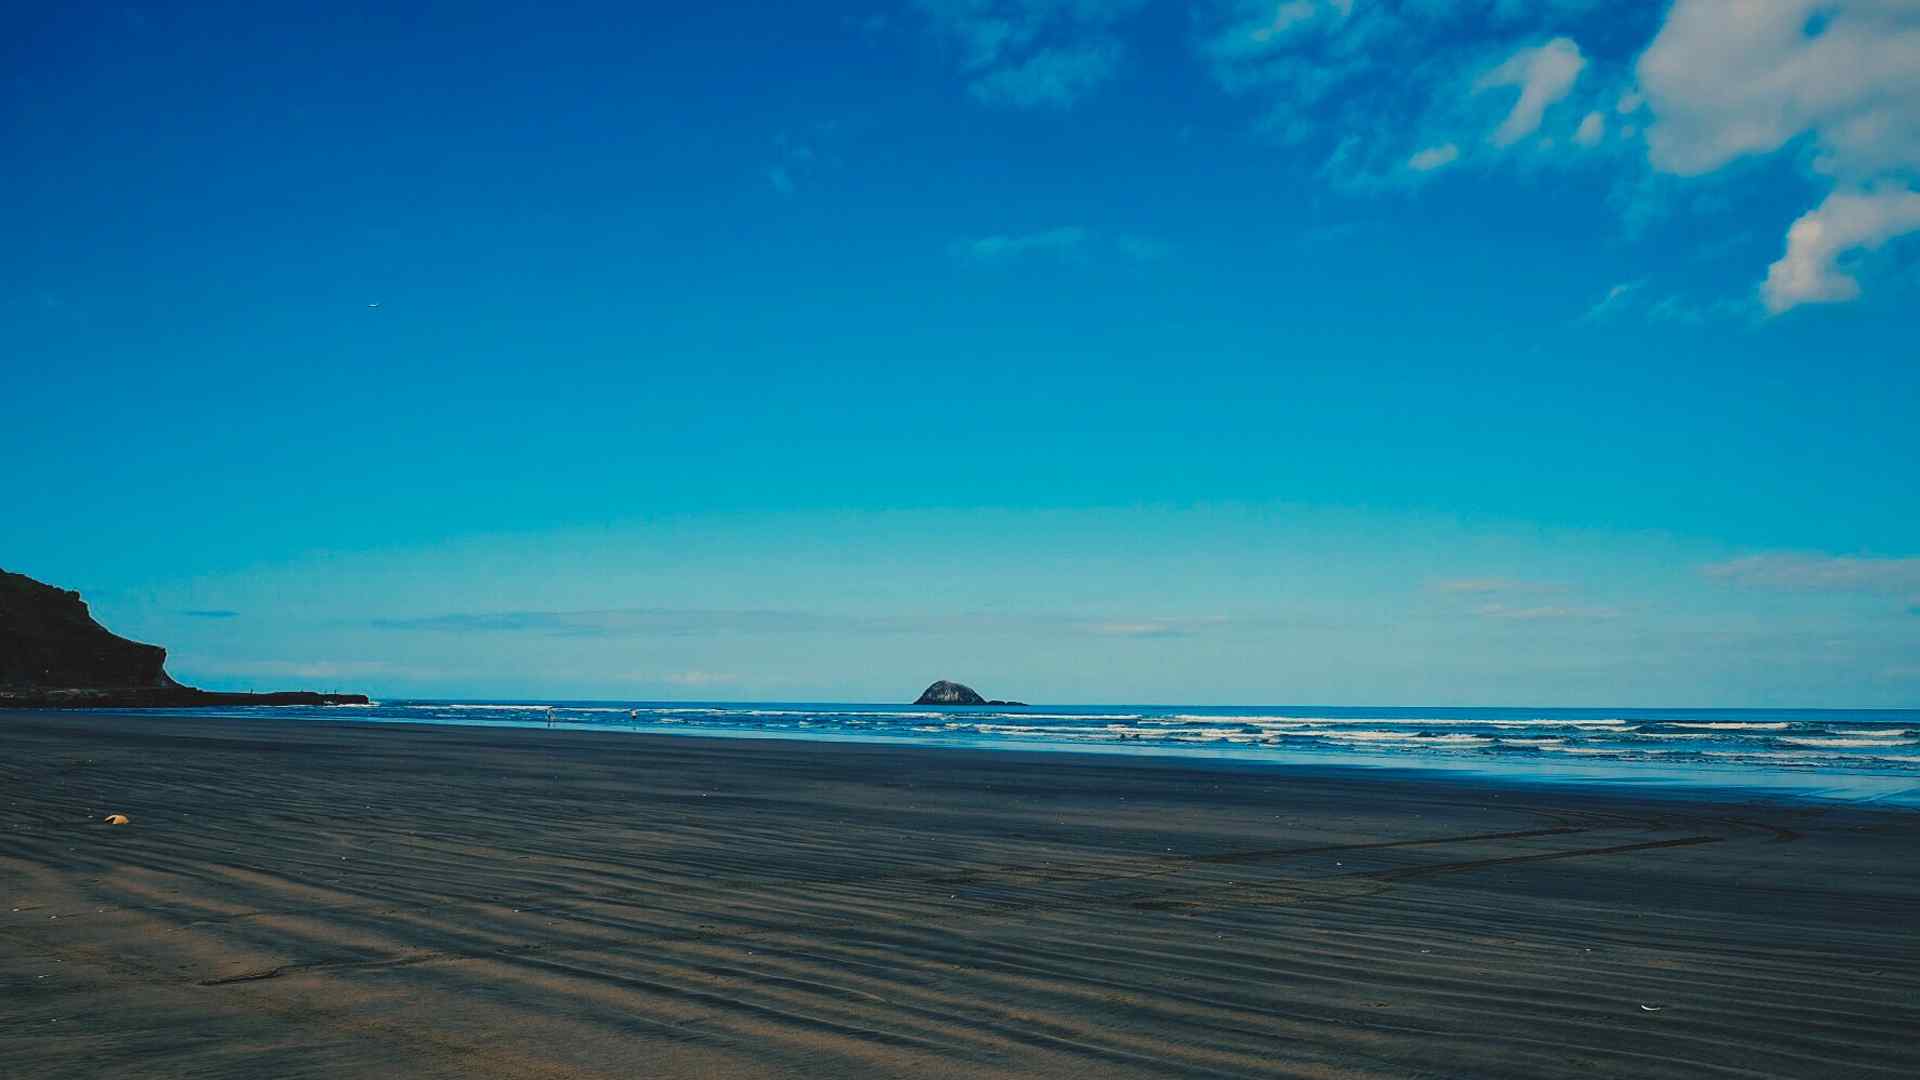 新西兰鸟岛黑沙滩风景图片桌面壁纸